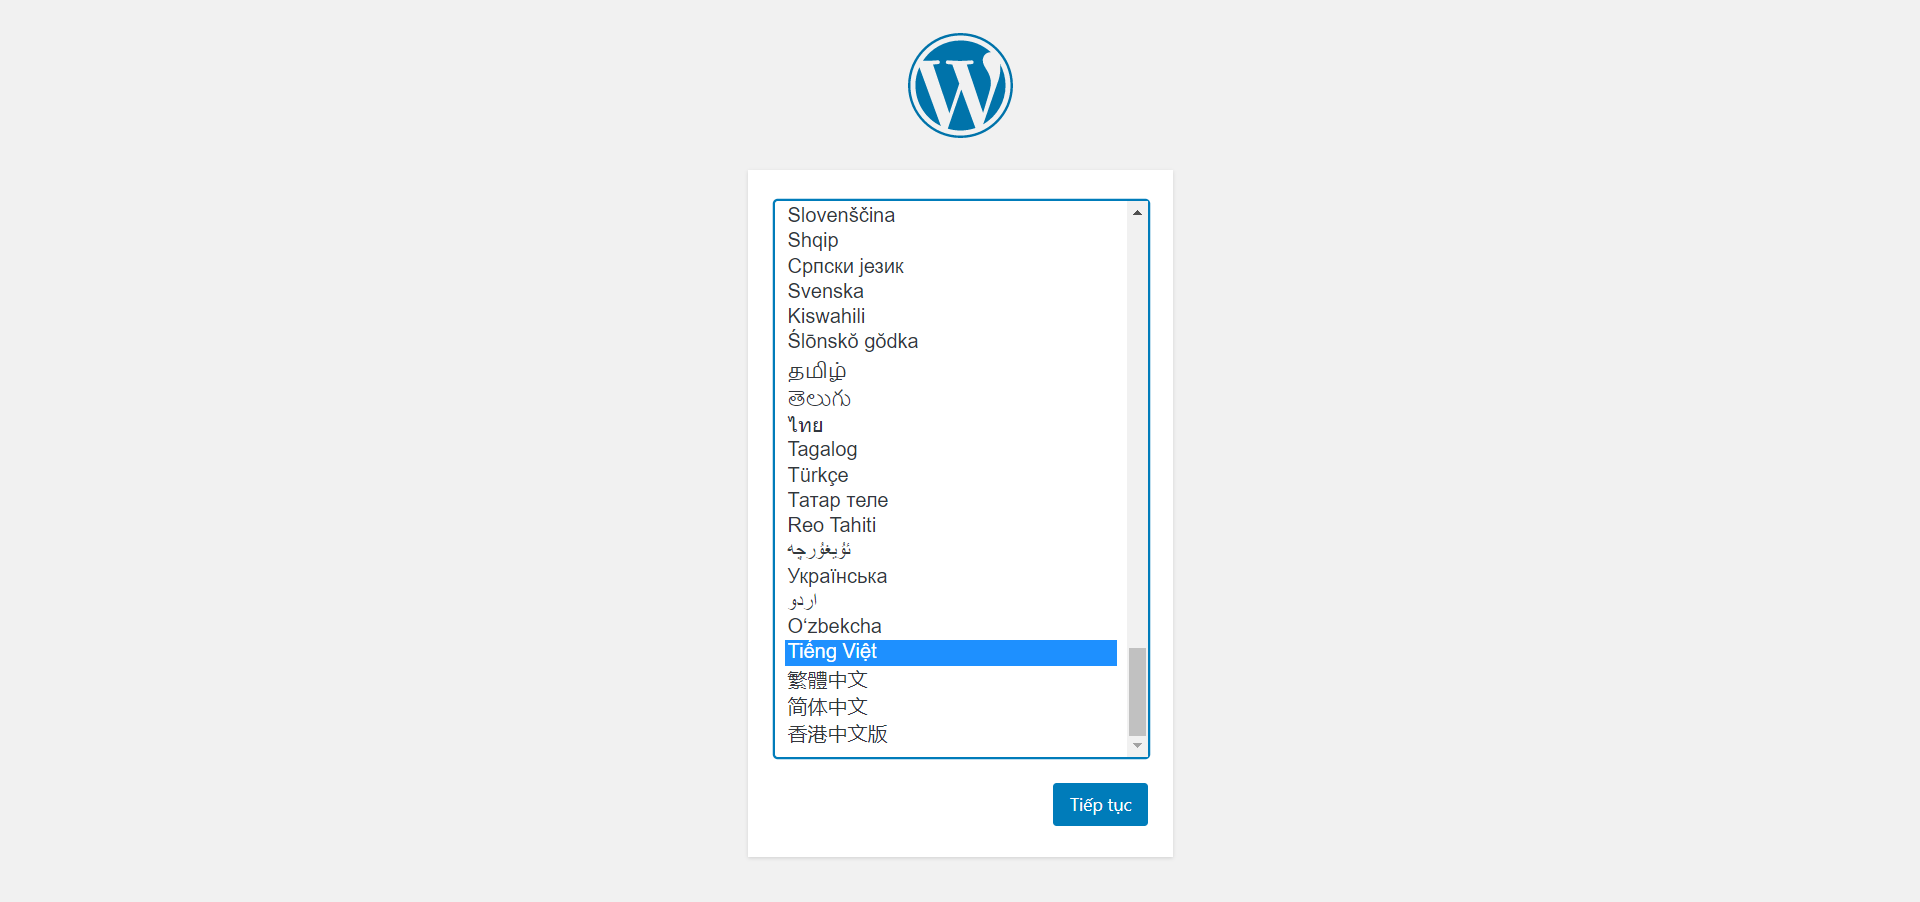 Truy cập giao diện web để hoàn tất cài đặt WordPress